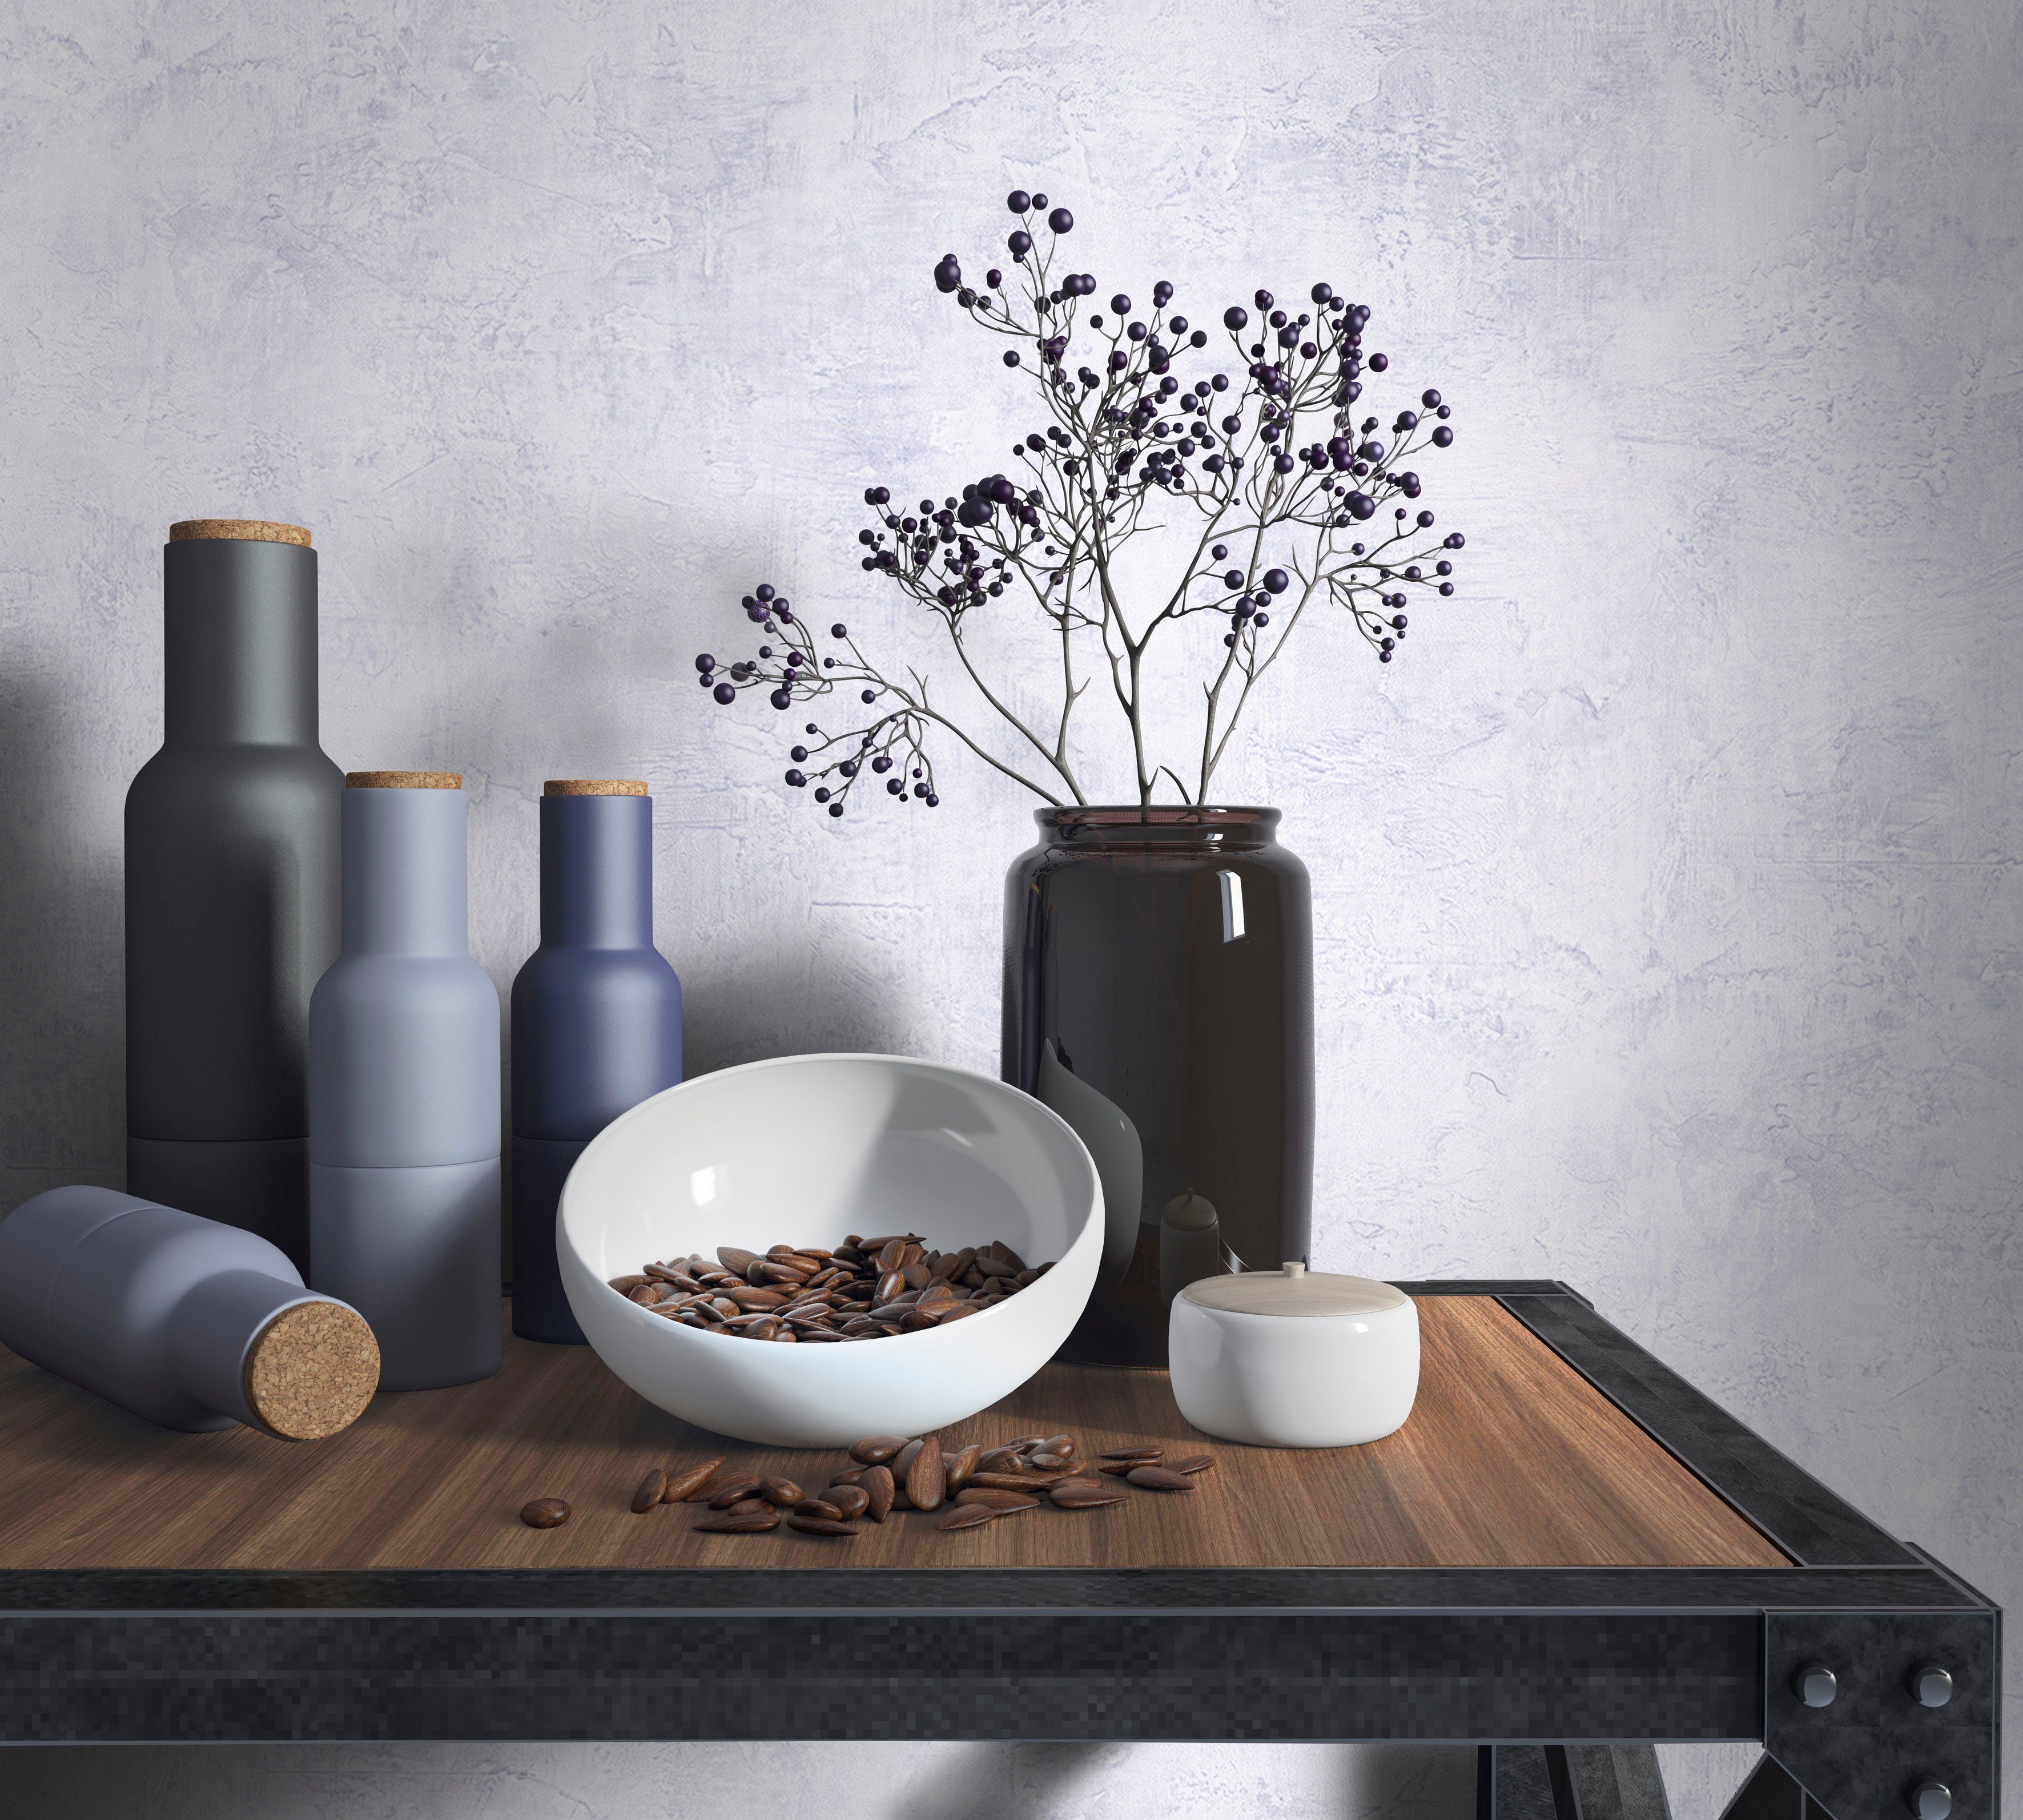 Küche Leather, für texturiert, moderne Schlafzimmer uni, Wohnzimmer Marburg Vliestapete Vliestapete lila